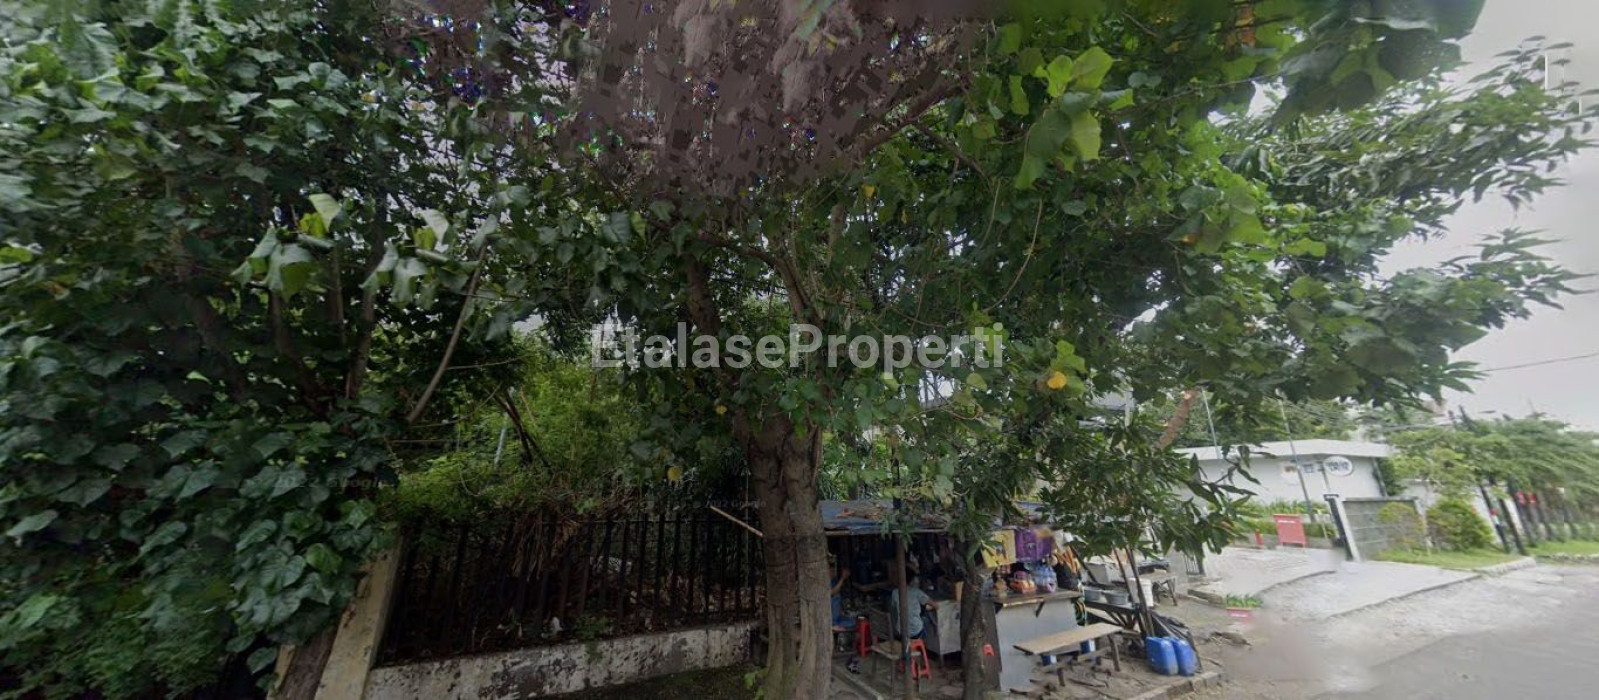 Foto properti Rumah Usaha Strategis Daerah Komersial Area Pusat Kota Surabaya 3